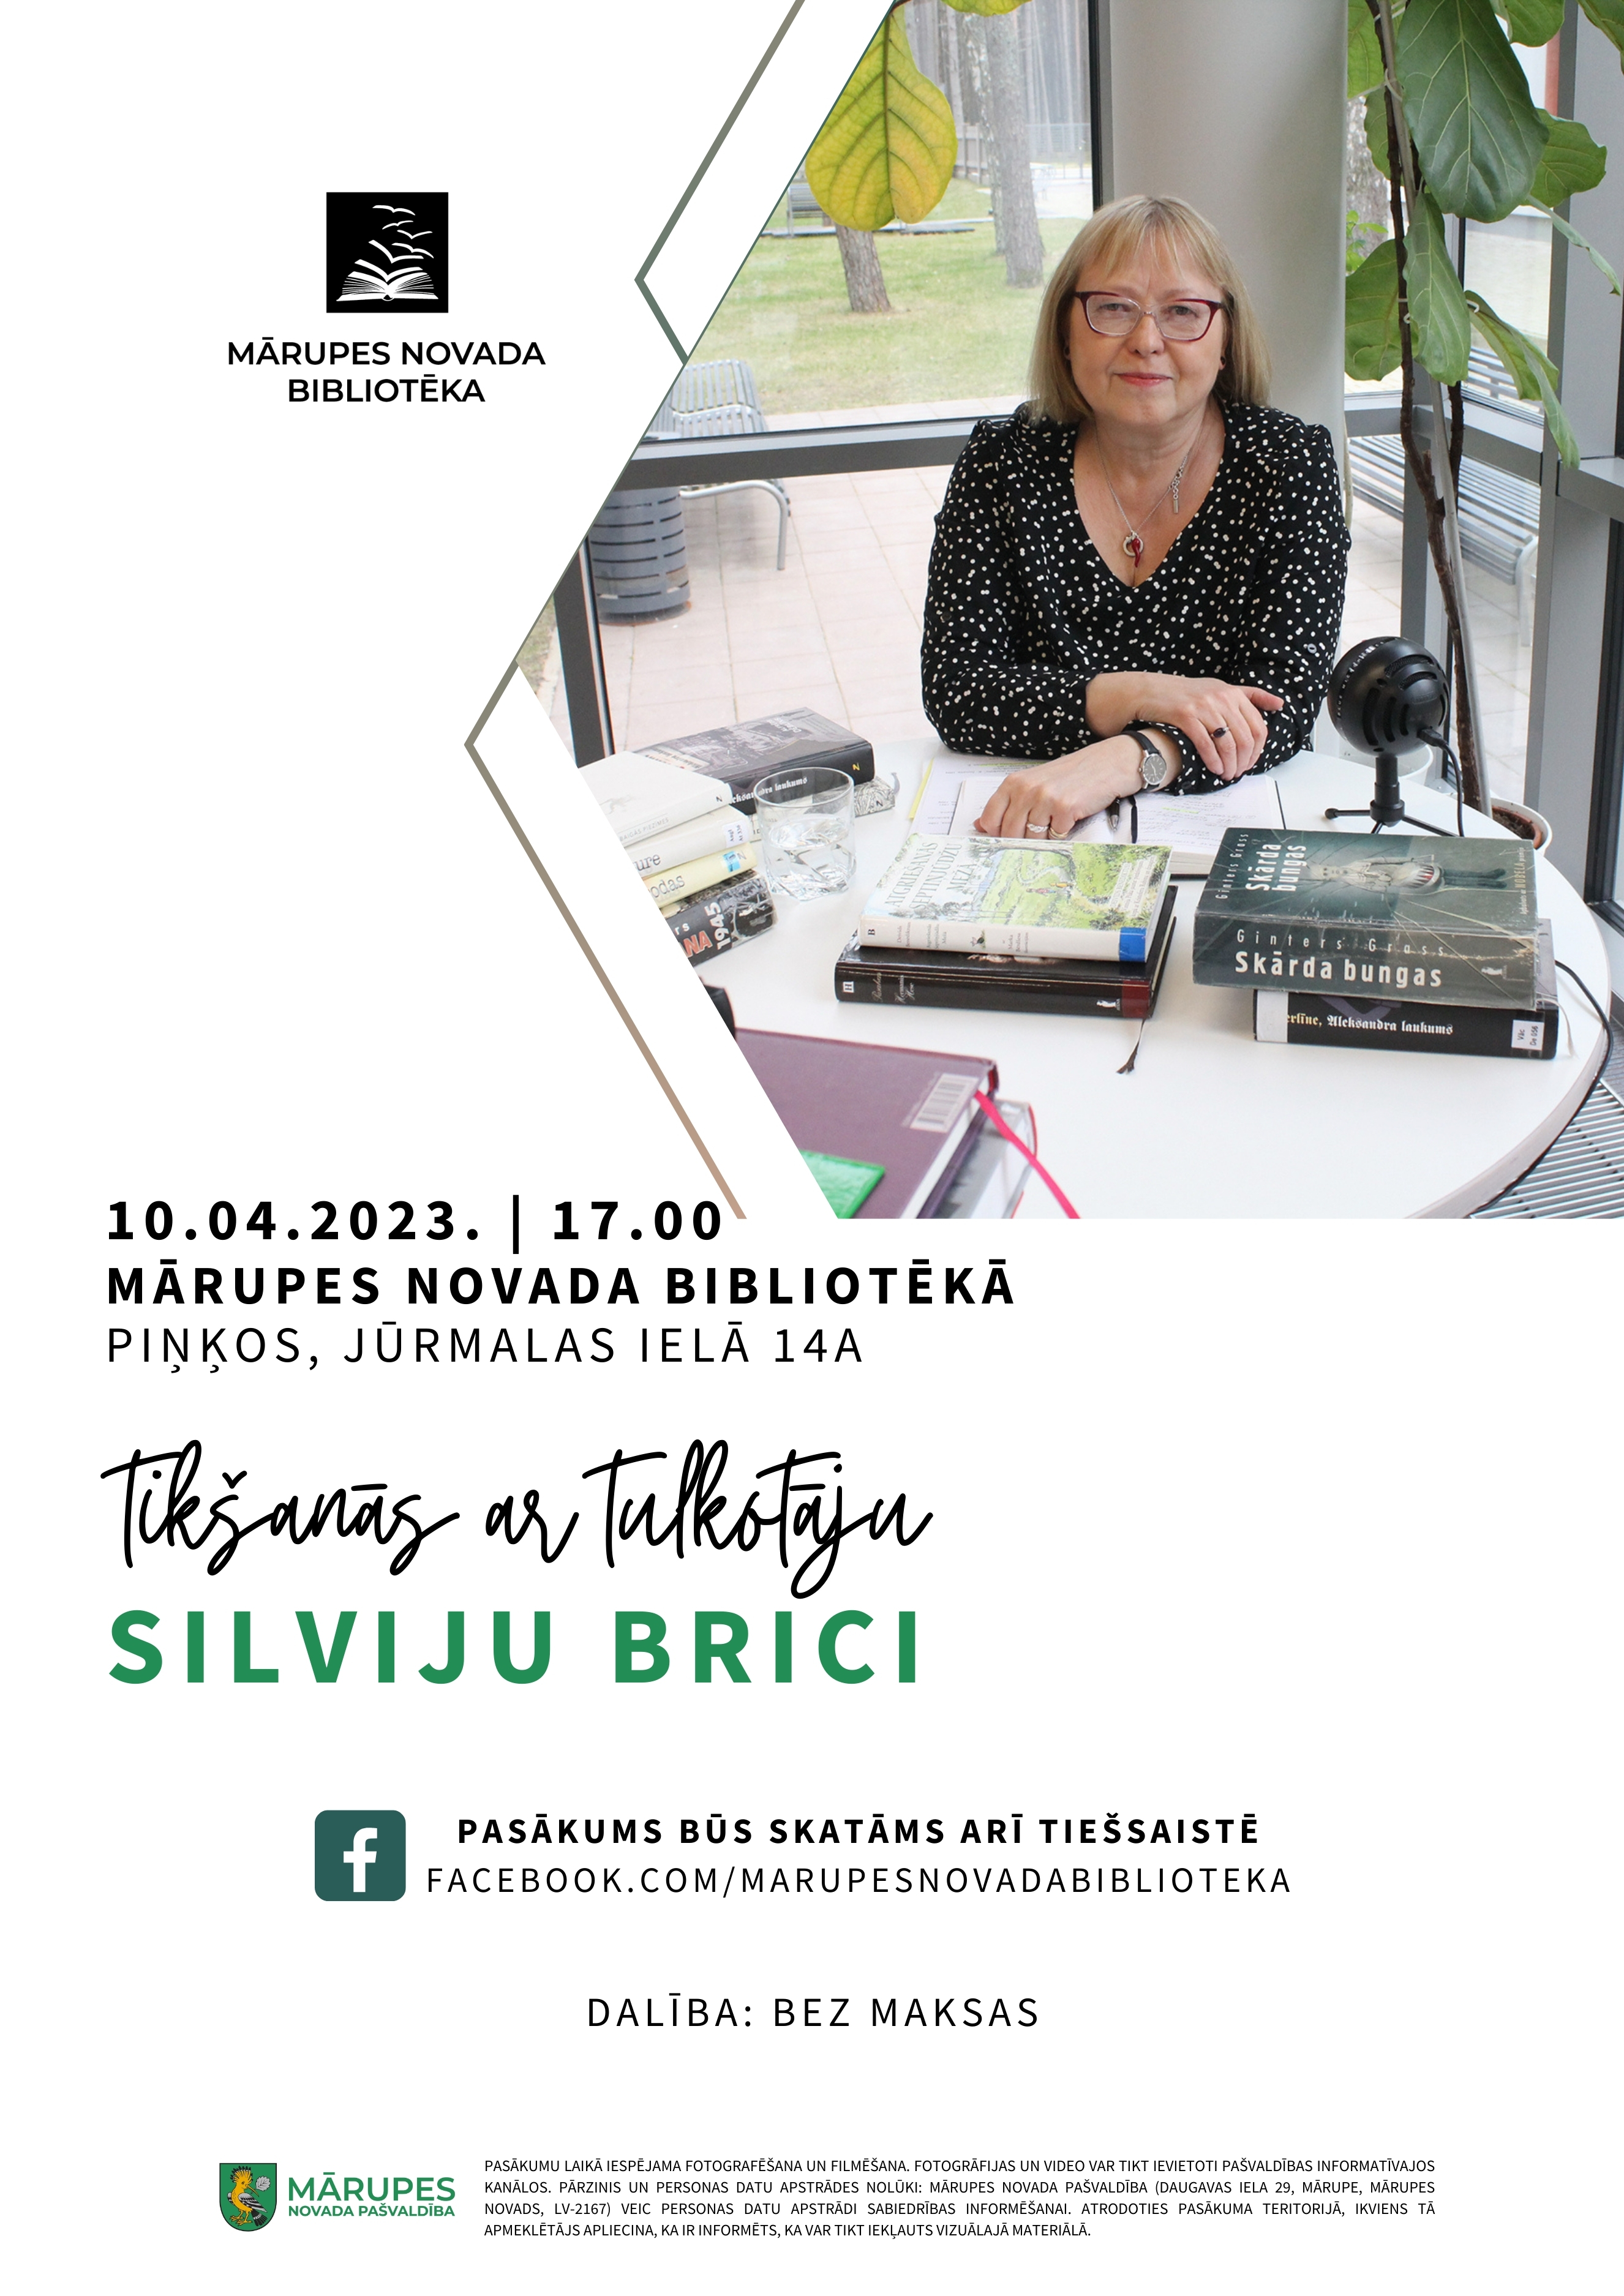 Tulkotāja Silvija Brice un teksts par pasākumu Mārupes novada bibliotēkā